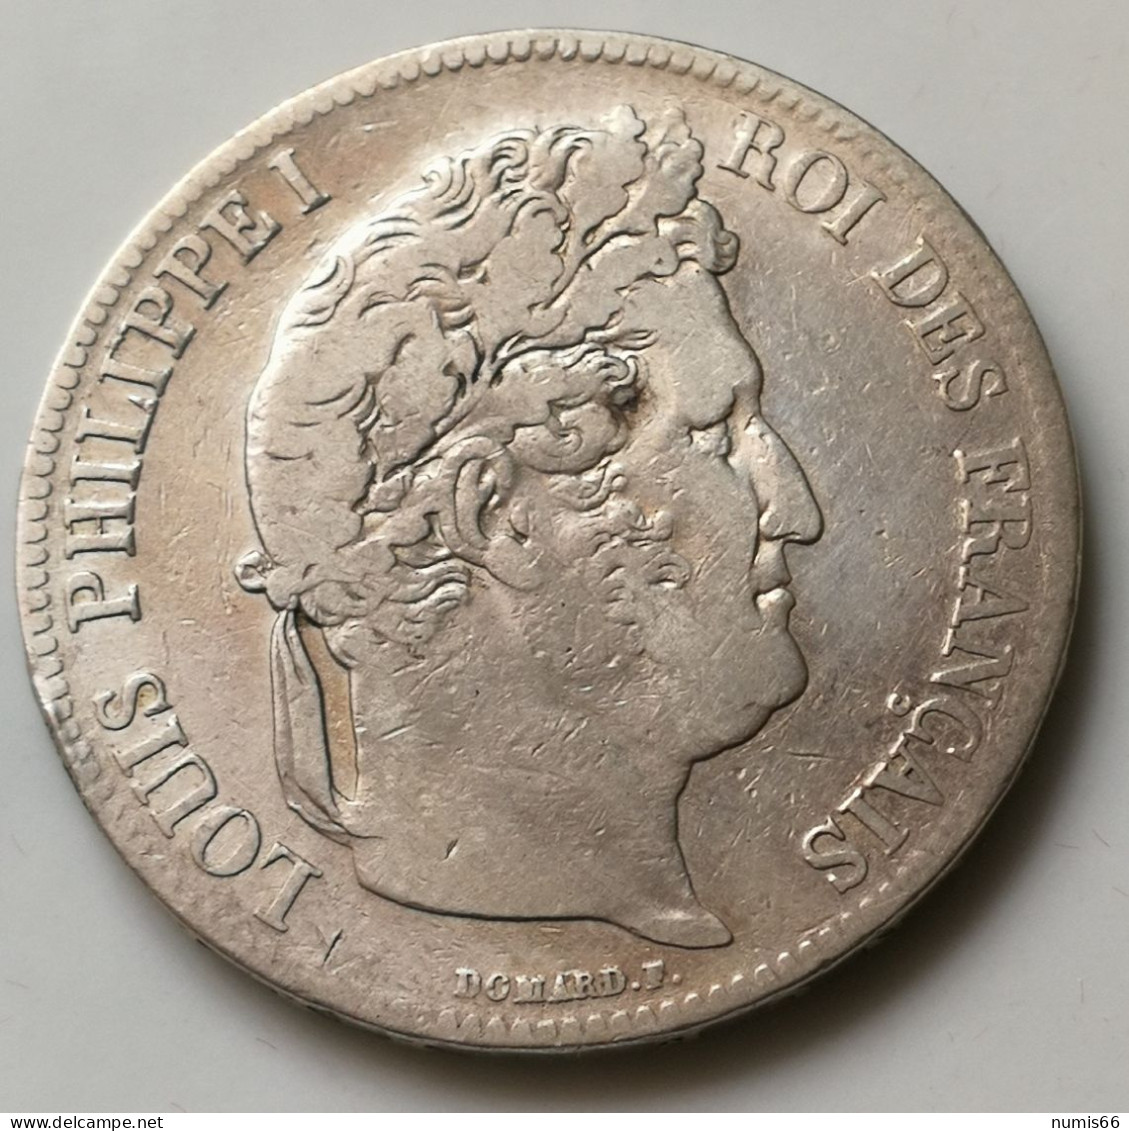 5 Fr Louis Philippe 1836 K - 5 Francs